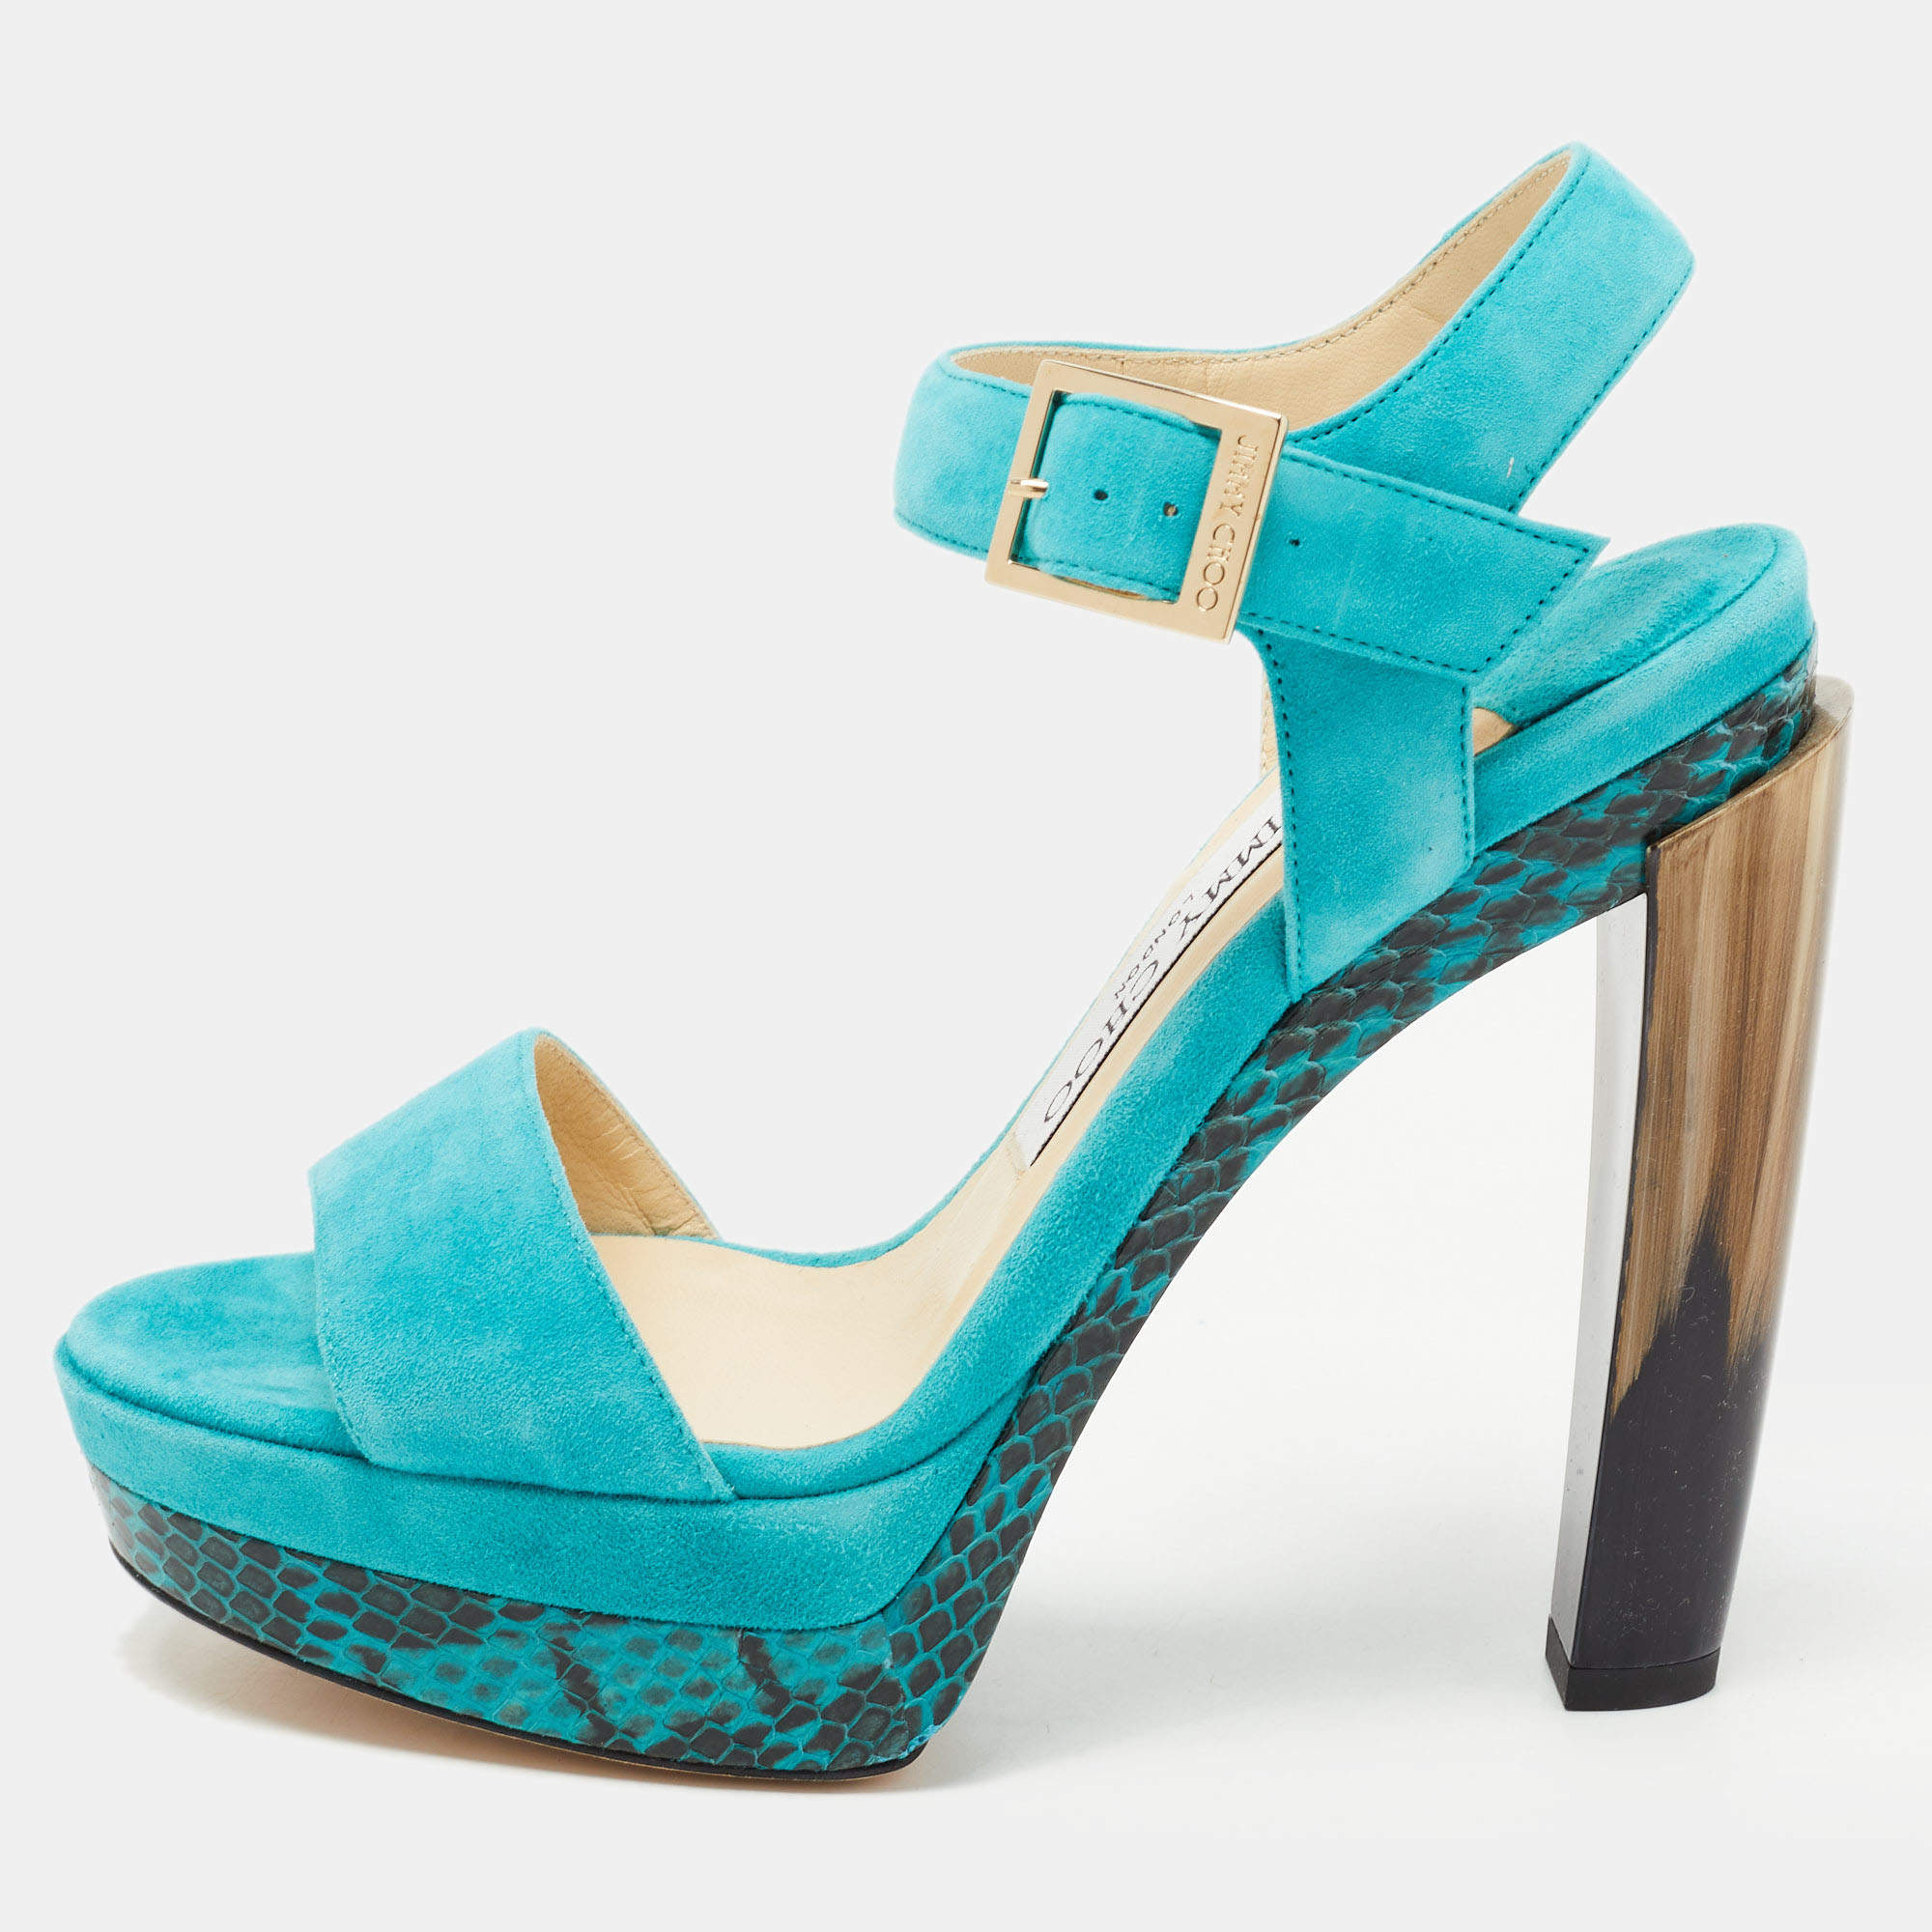 Comme il Faut - Reptil Azul Turquoise Shoes - Comme il Faut - Reptil Azul Turquoise  Shoes